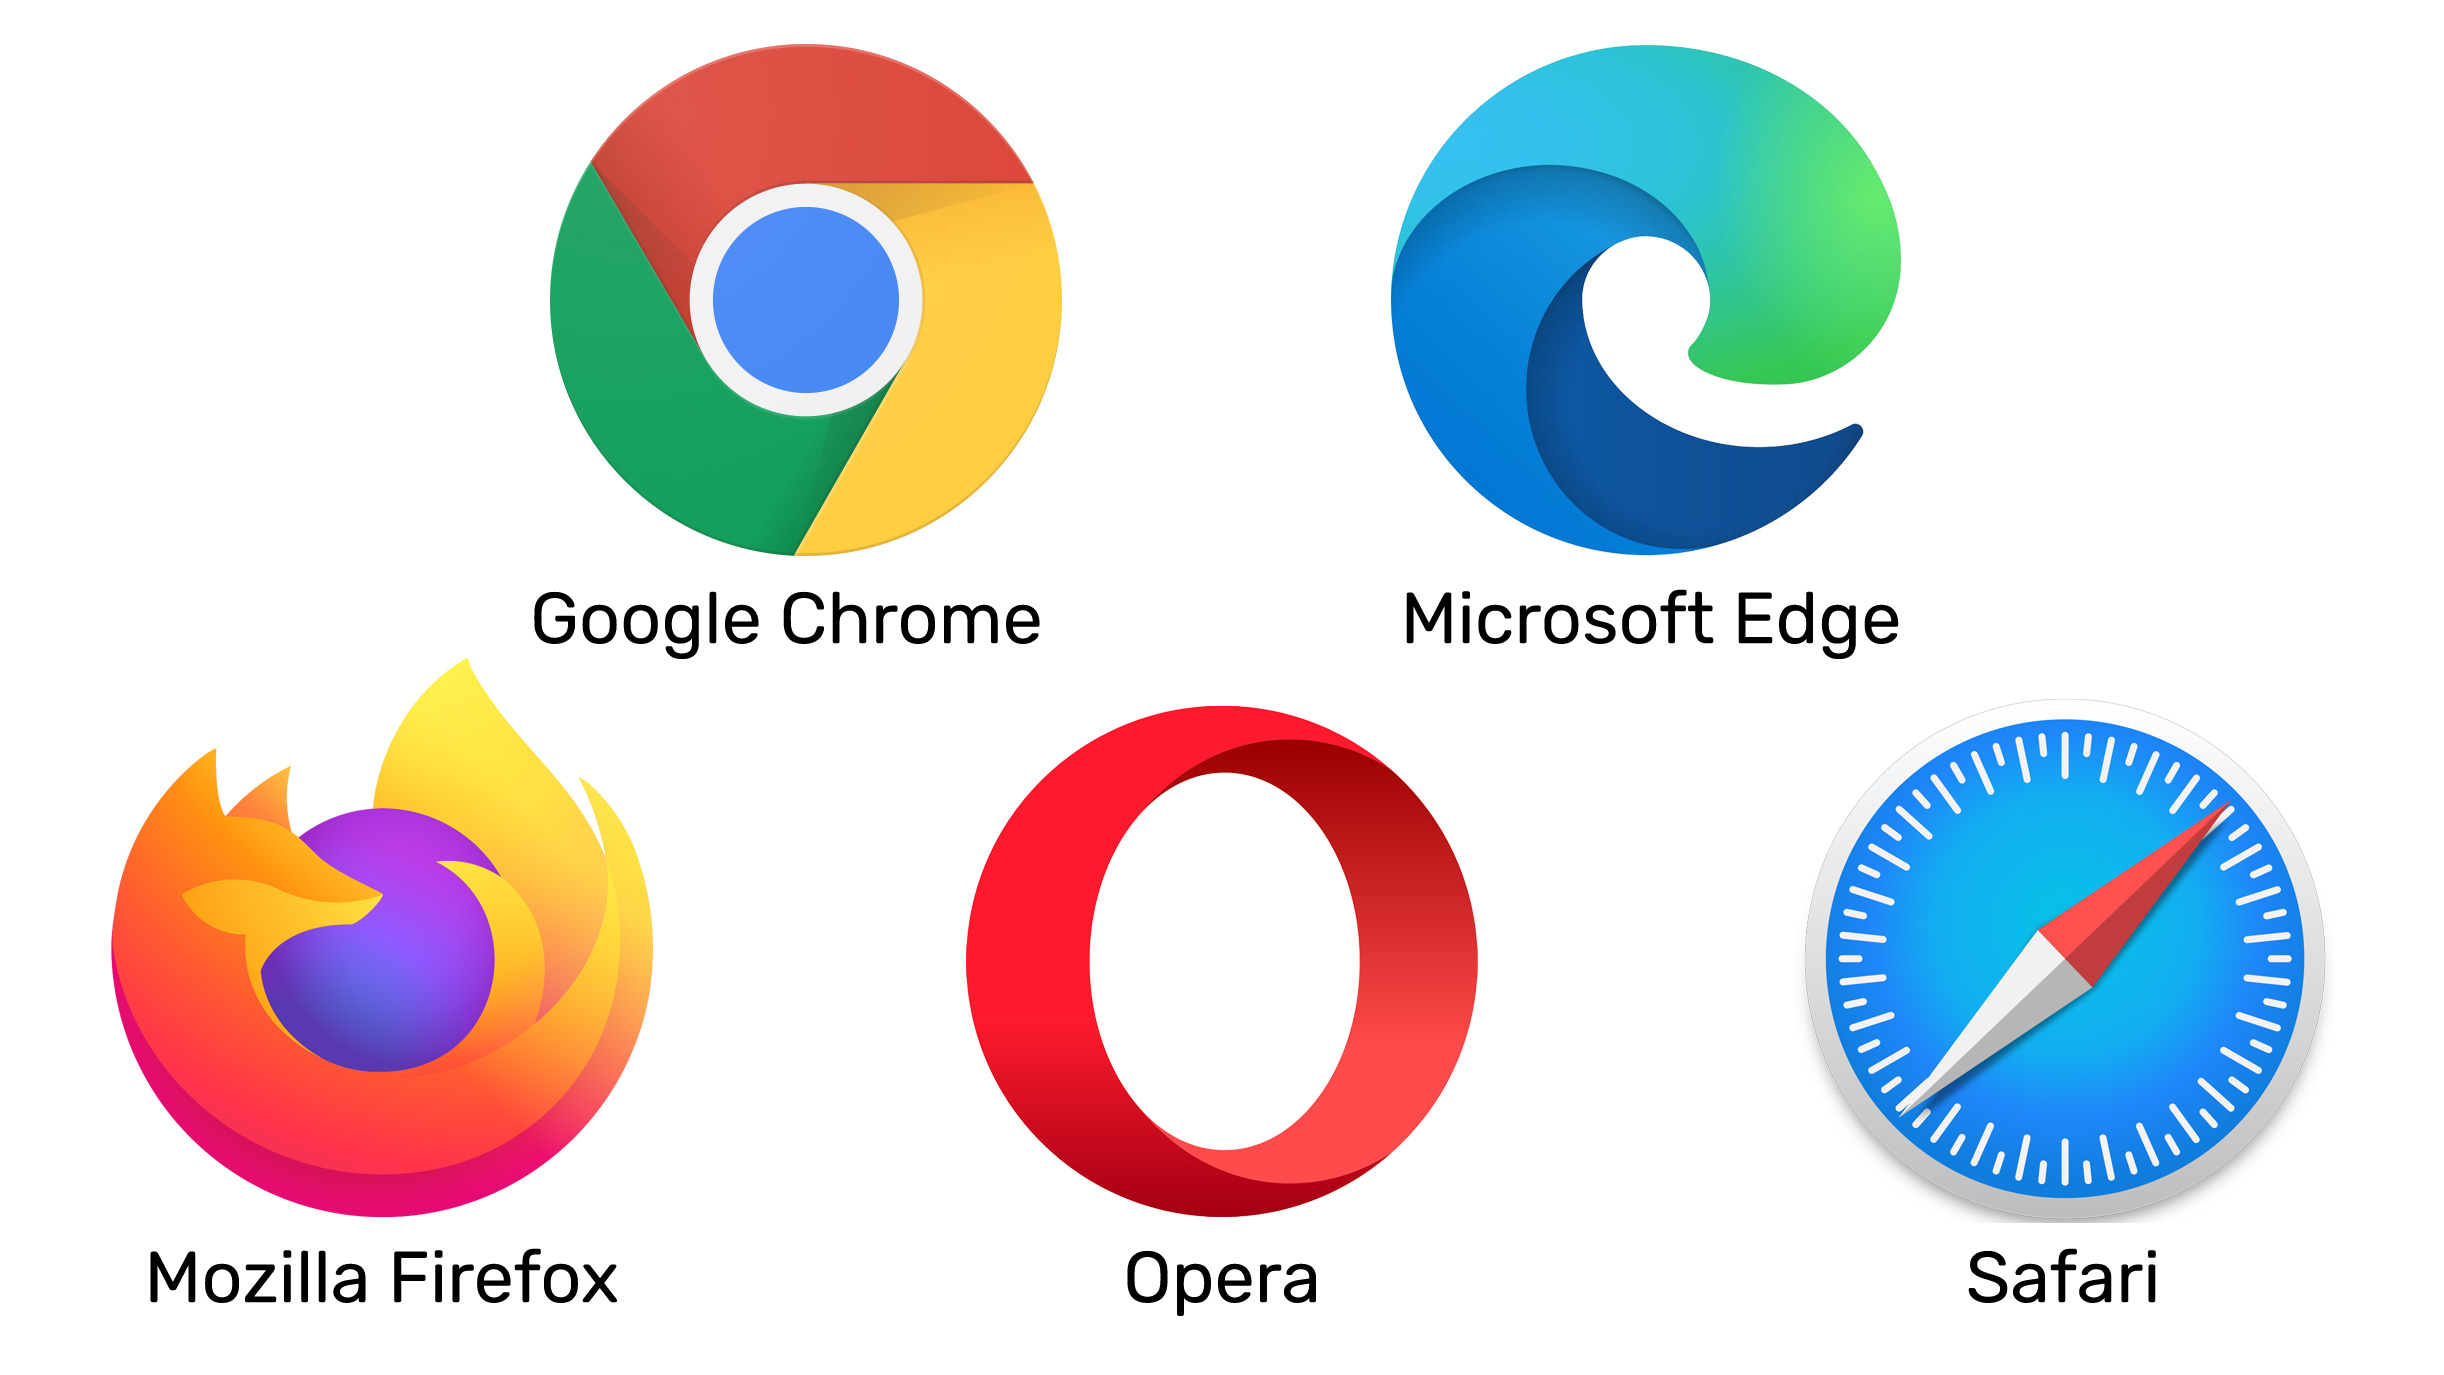 Ikone najpoznatijih internetskih preglednika: Google Chromea, Microsoft Edgea, Mozilla Firefoxa, Opere i Safarija.